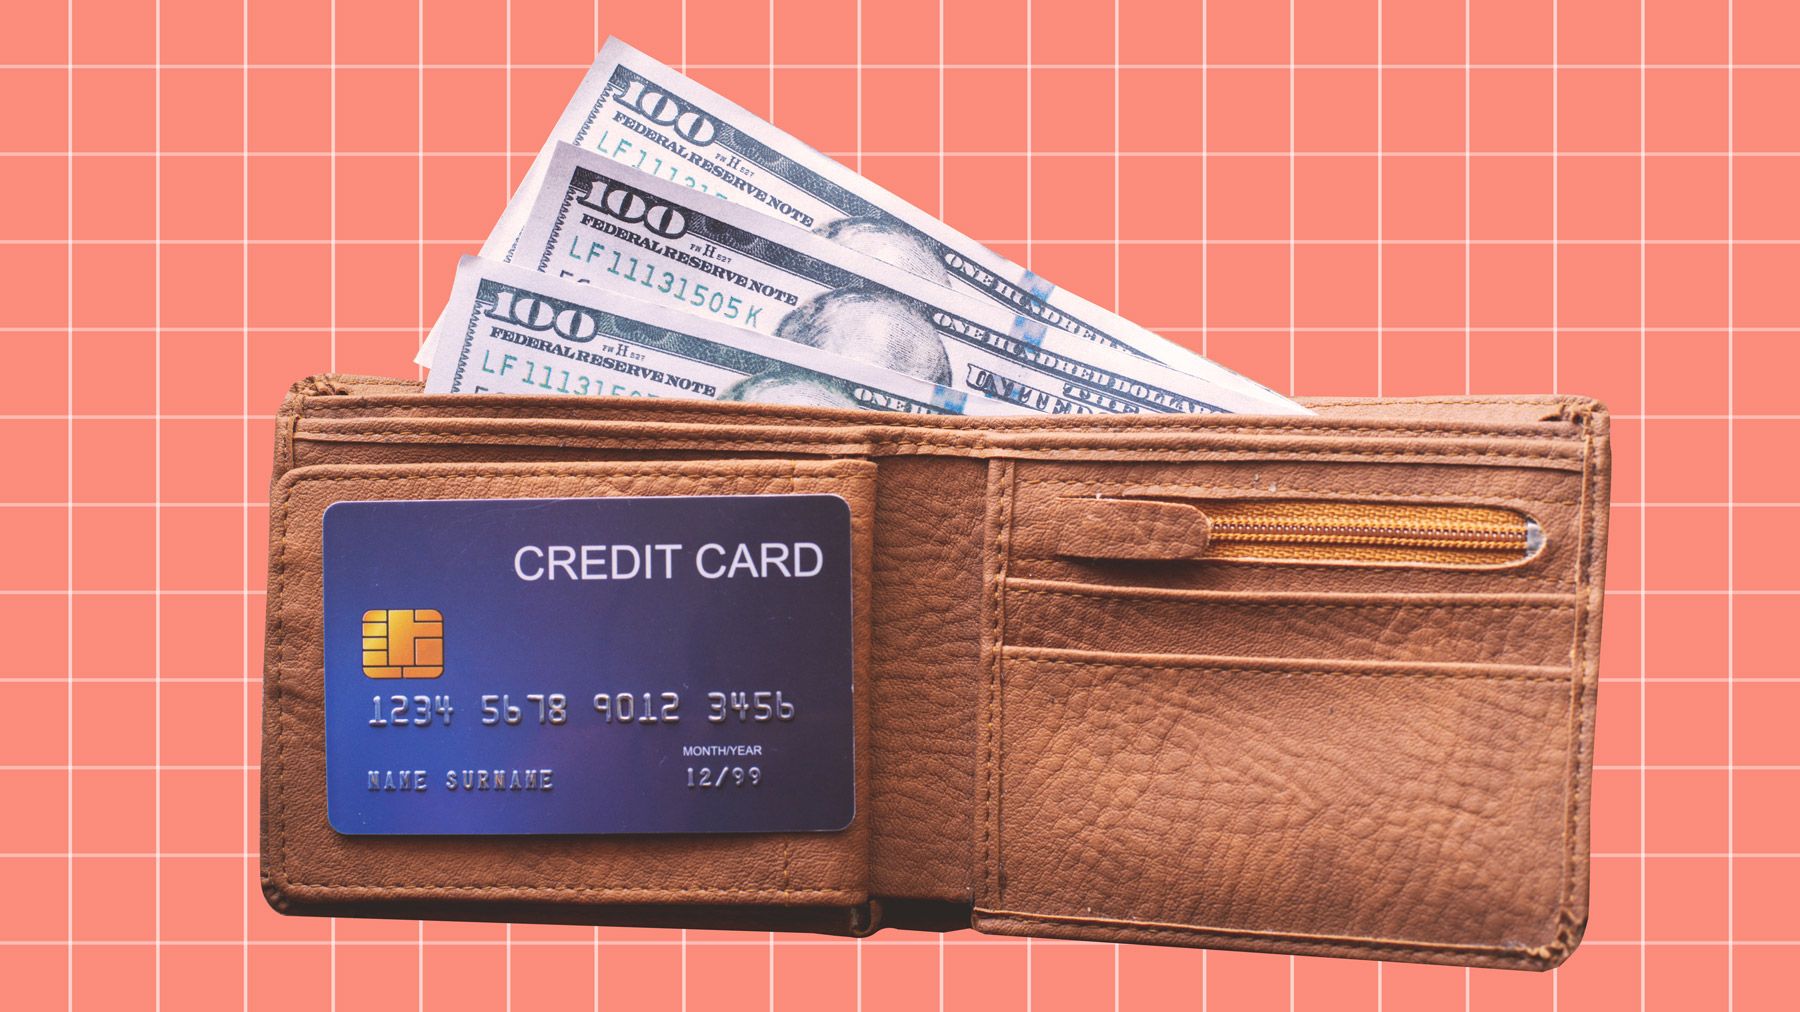 Tirez-vous un bon rapport qualité-prix de votre carte de crédit Rewards ? Un nouveau sondage indique que beaucoup de gens ne le sont pas